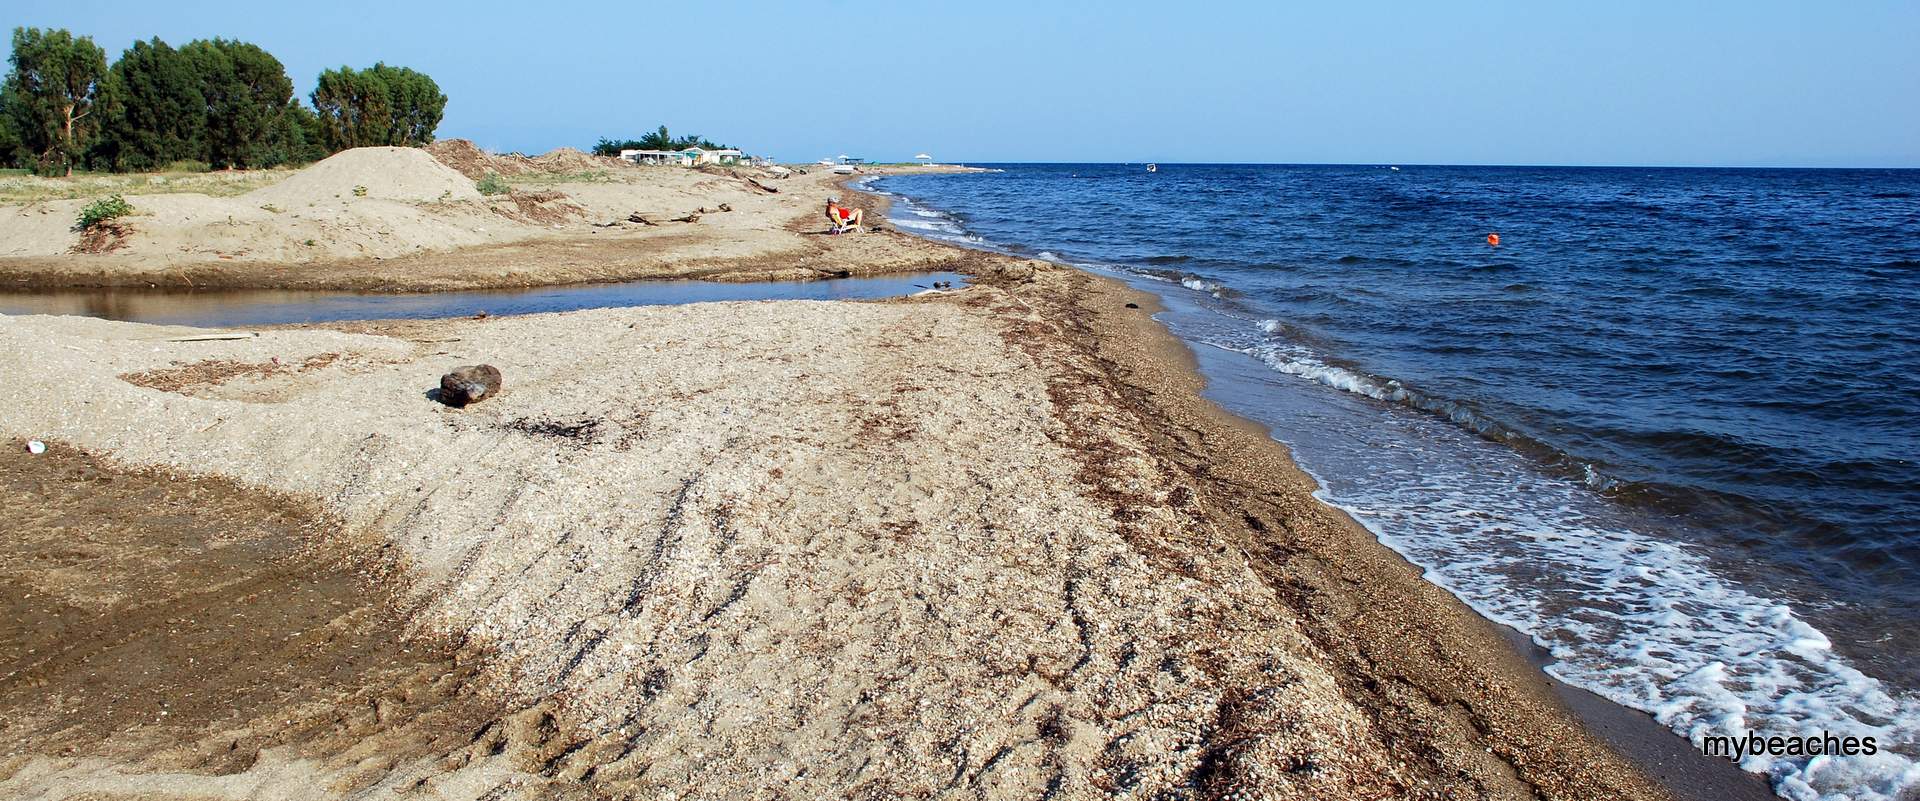 Nisi beach, Toroneos gulf, Halkidiki, Greece